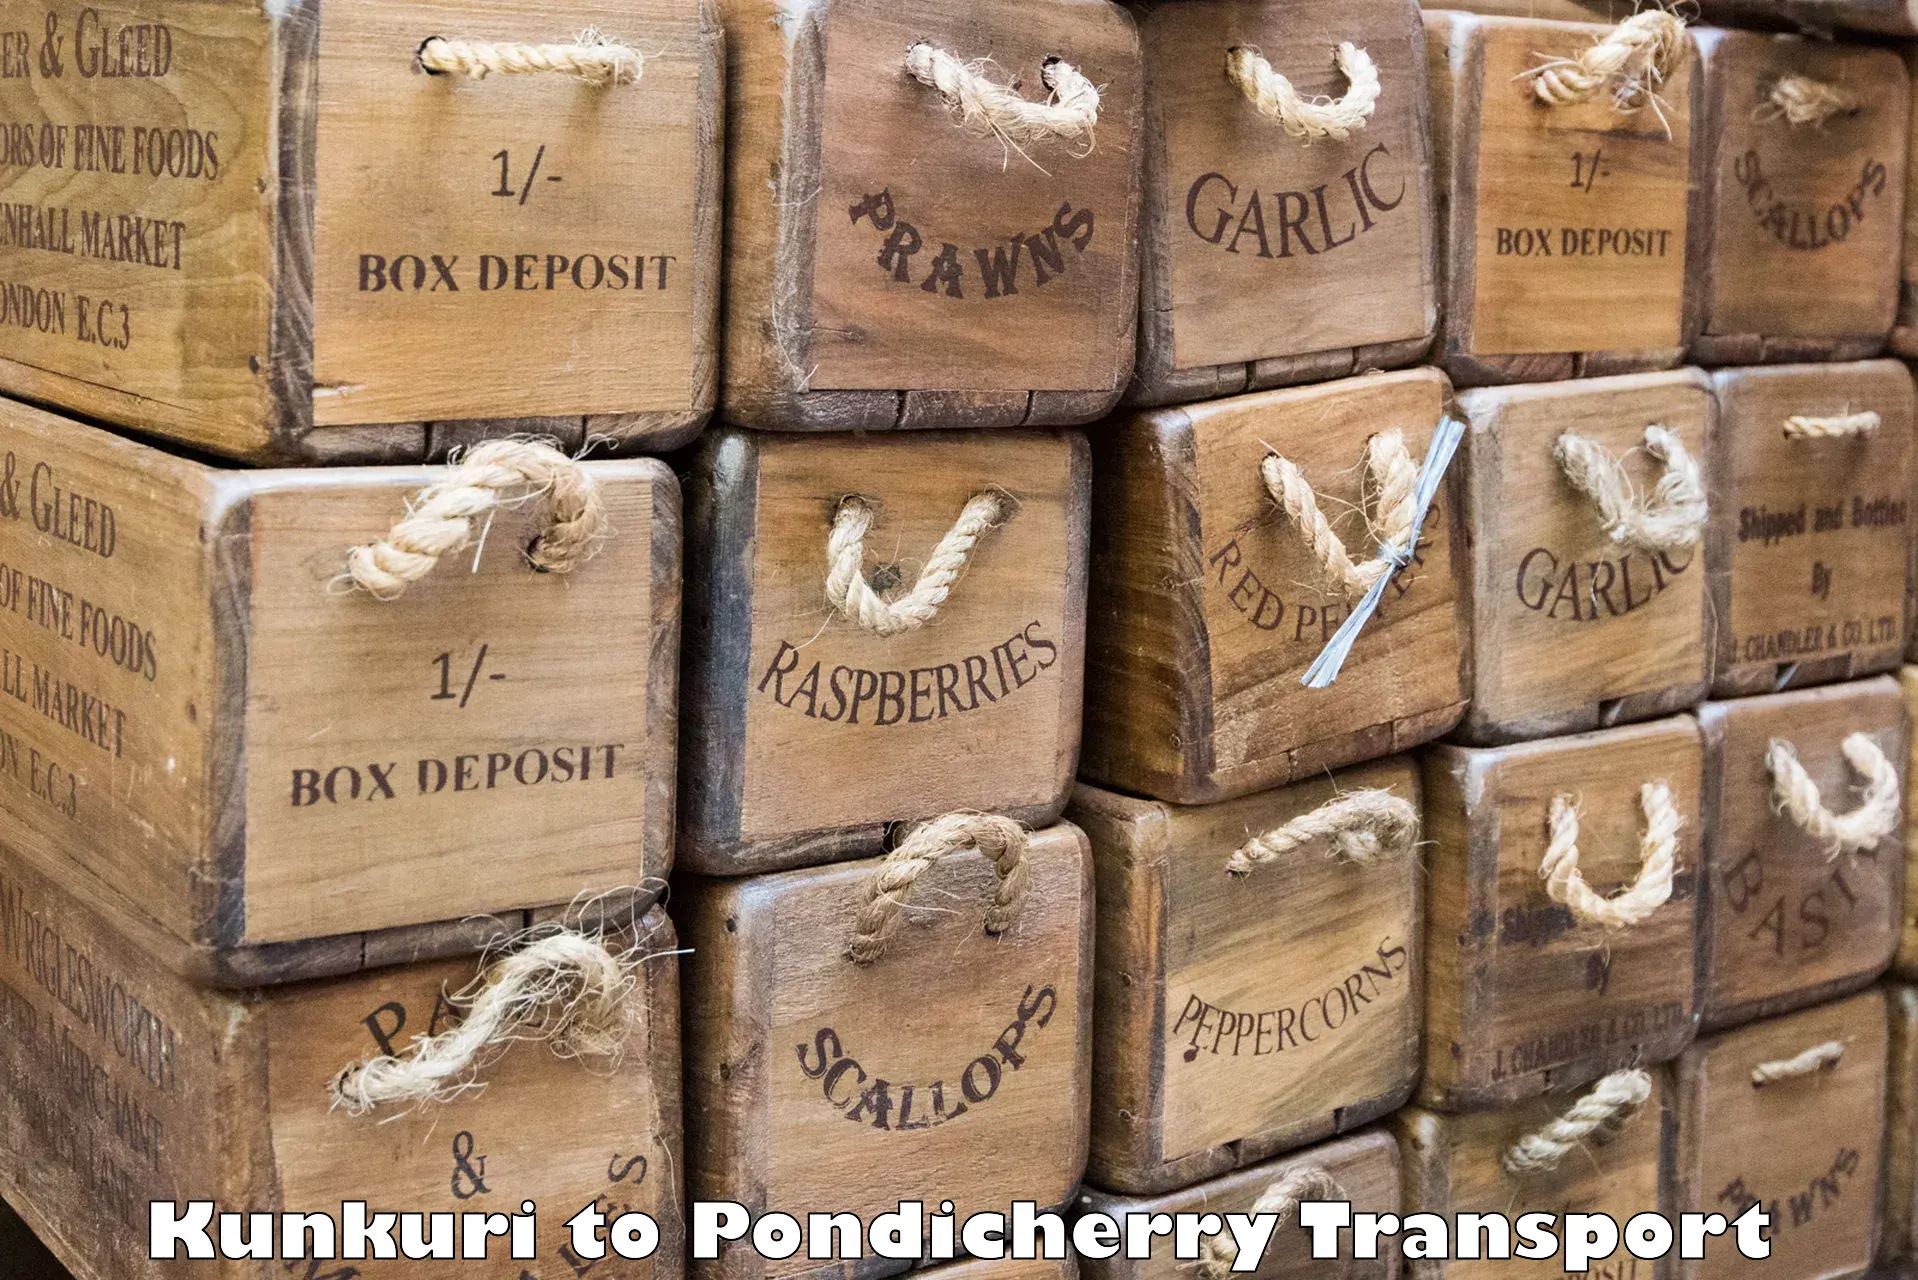 Online transport service Kunkuri to Pondicherry